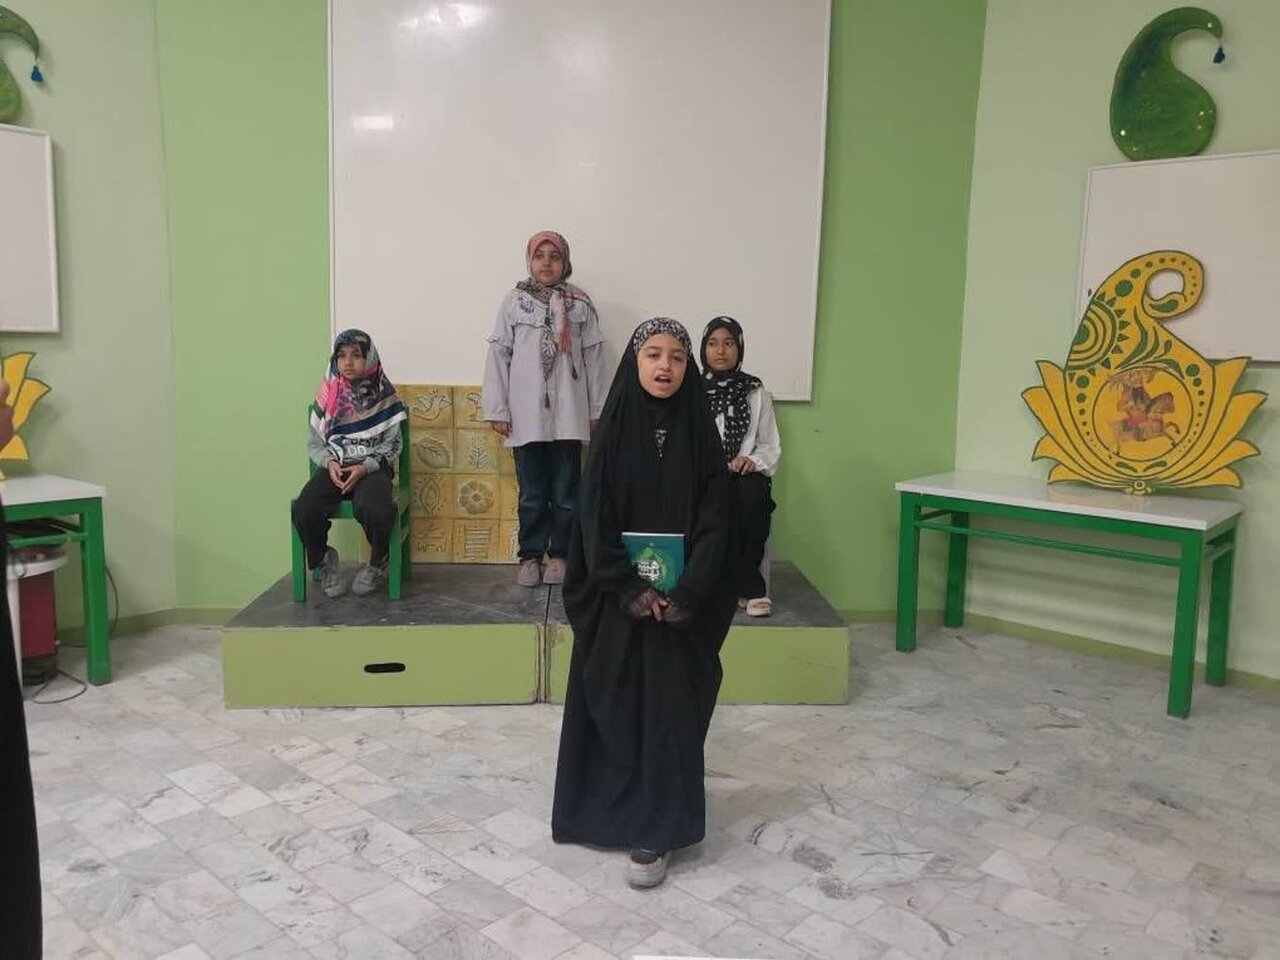 برنامه «سخن روح افزا» برای کودکان و نوجوانان استان بوشهر اجرا شد